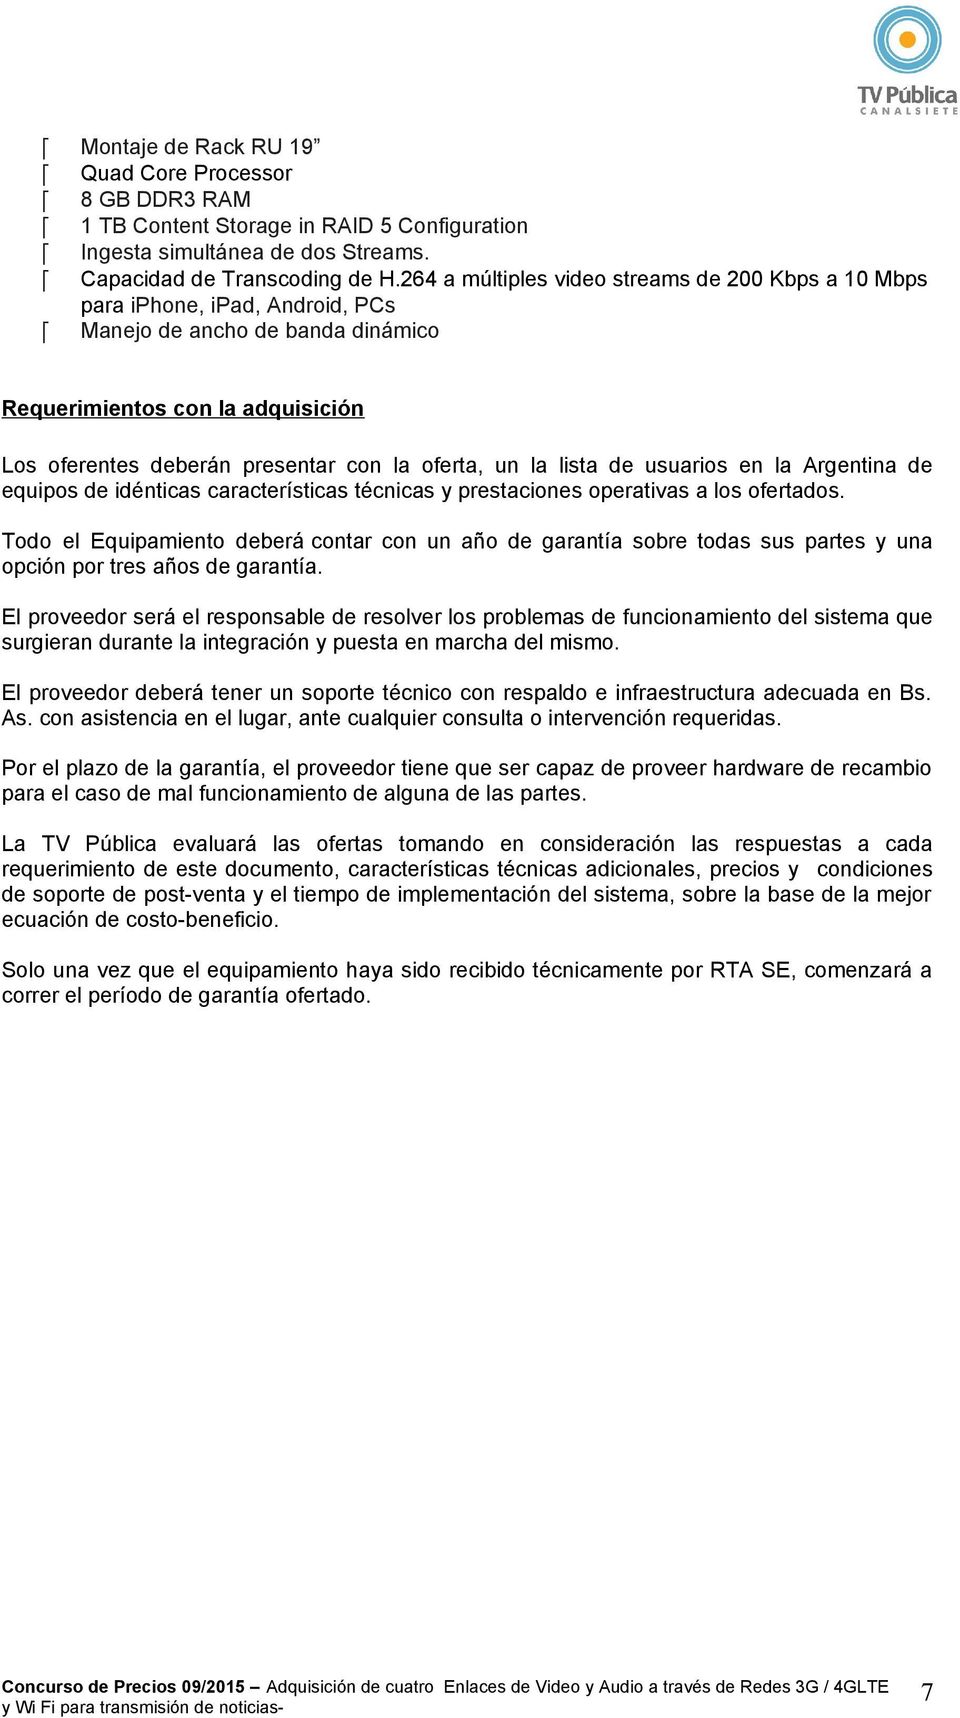 un la lista de usuarios en la Argentina de equipos de idénticas características técnicas y prestaciones operativas a los ofertados.